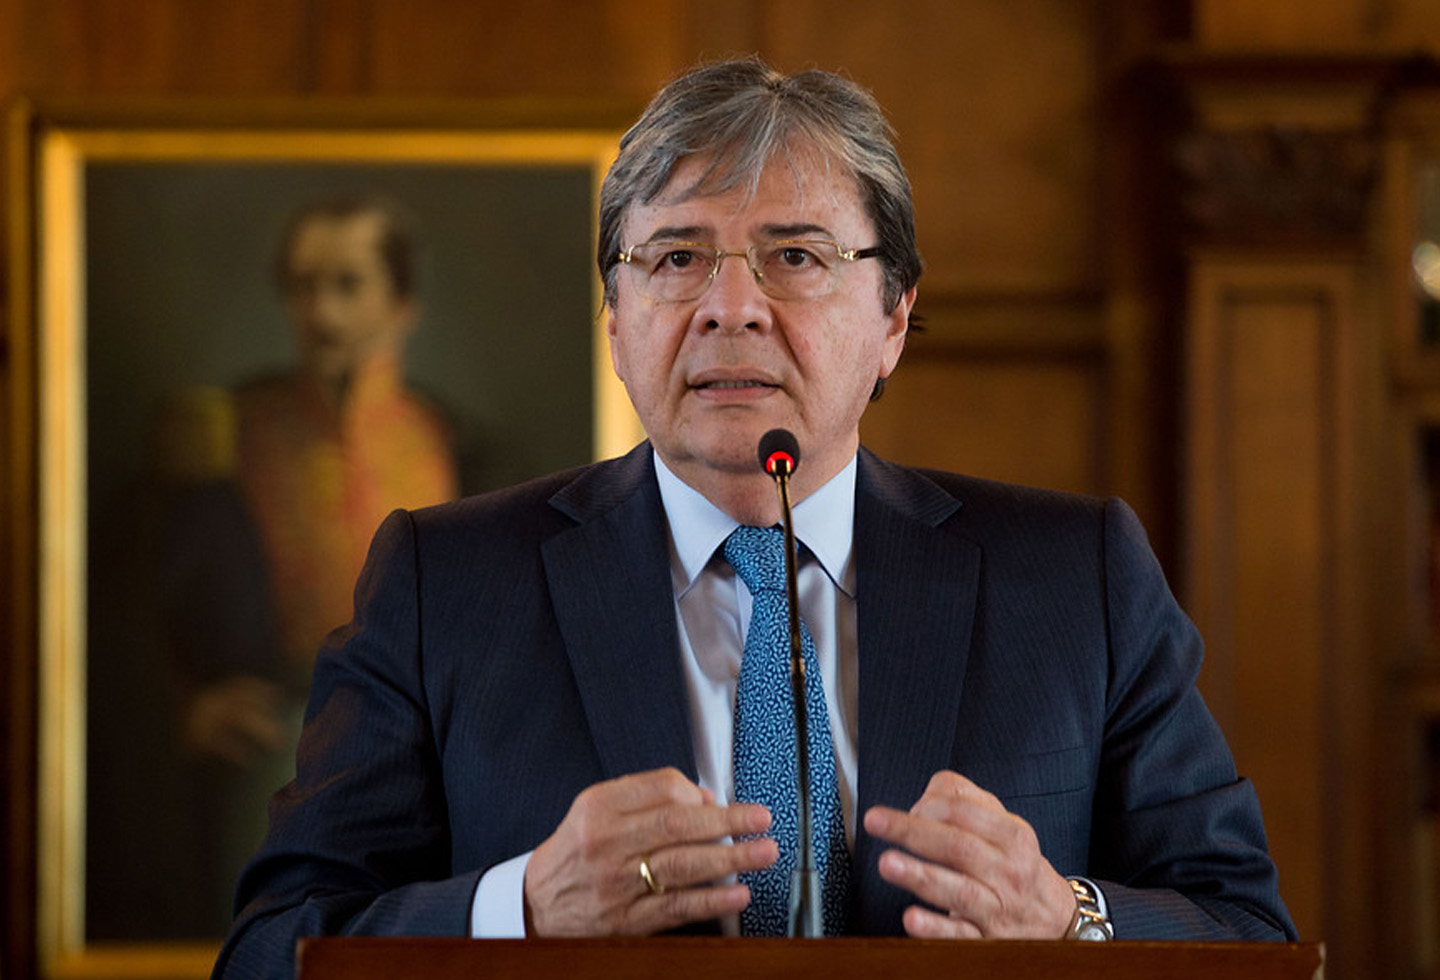 Canciller colombiano denunció “atropellos” del régimen contra opositores